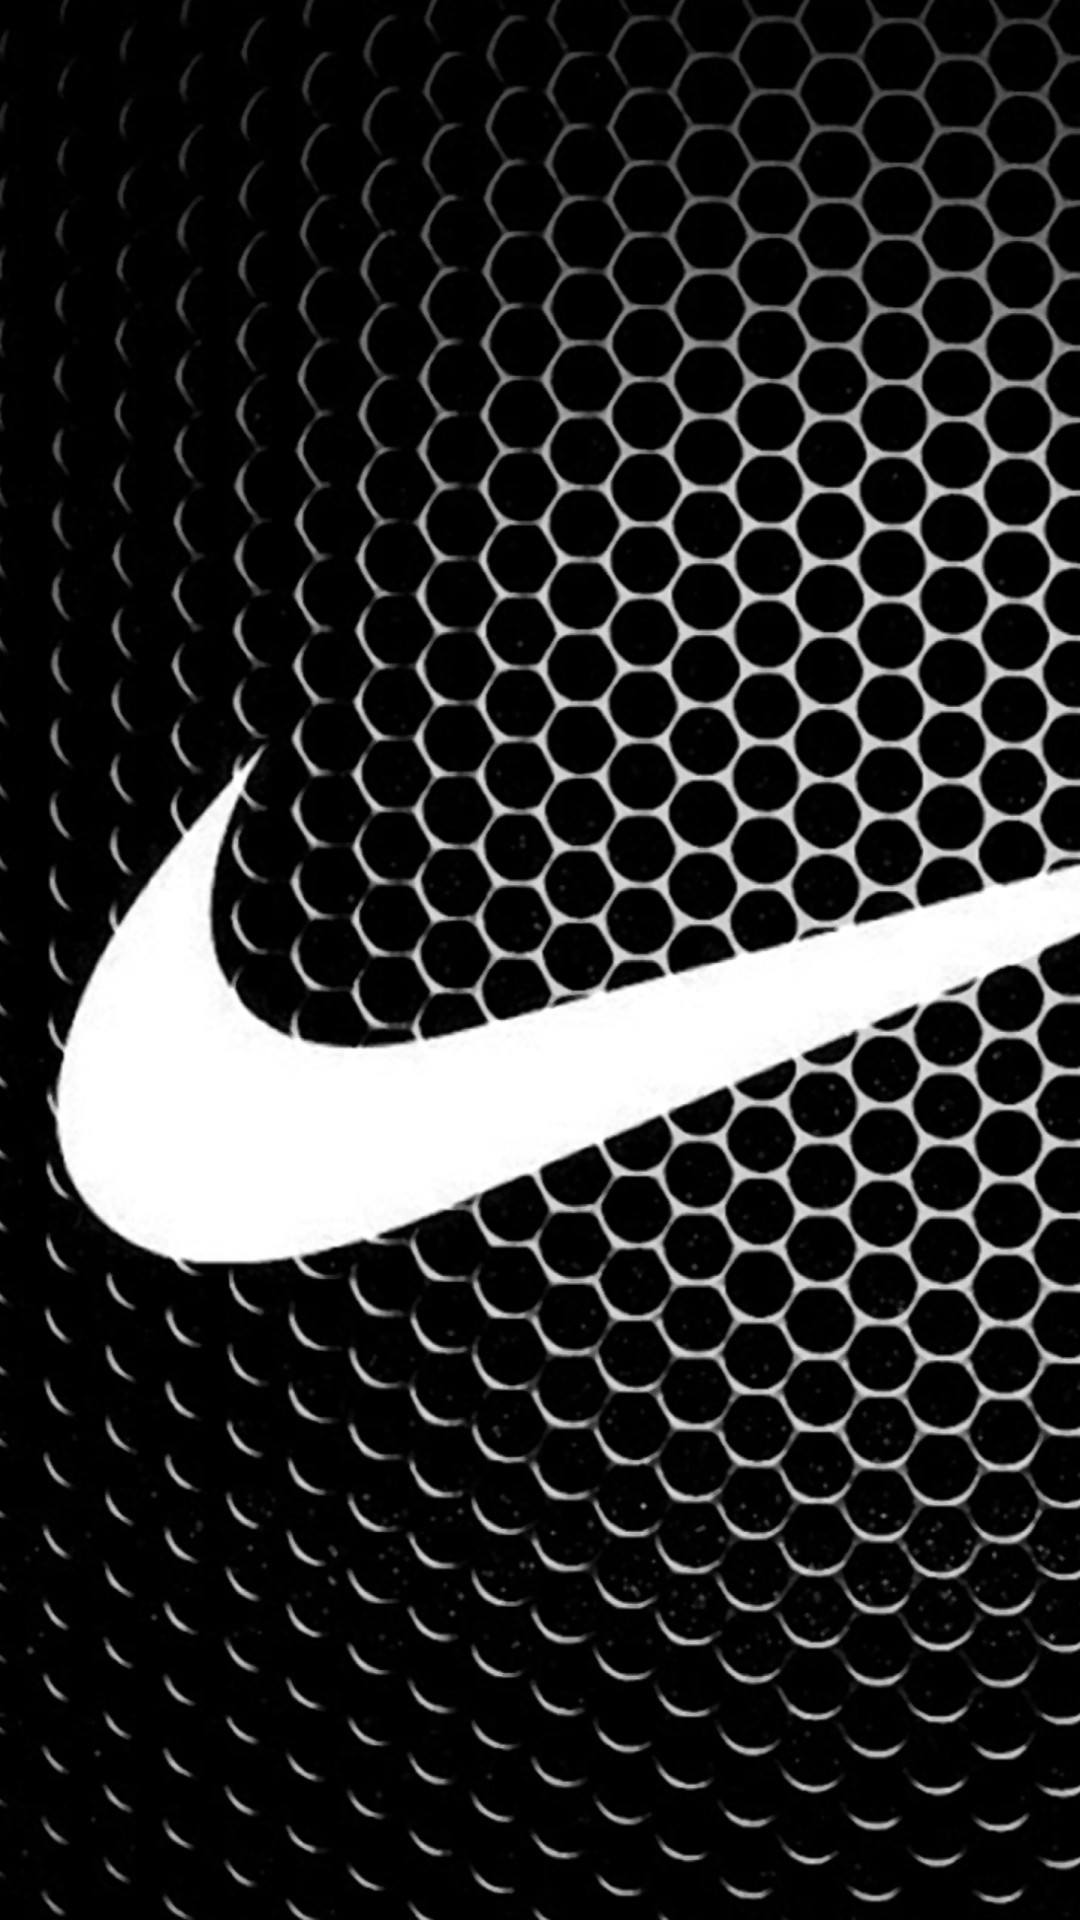 1080x1920 best ideas about Nike wallpaper on Pinterest Nike logo Nike HD